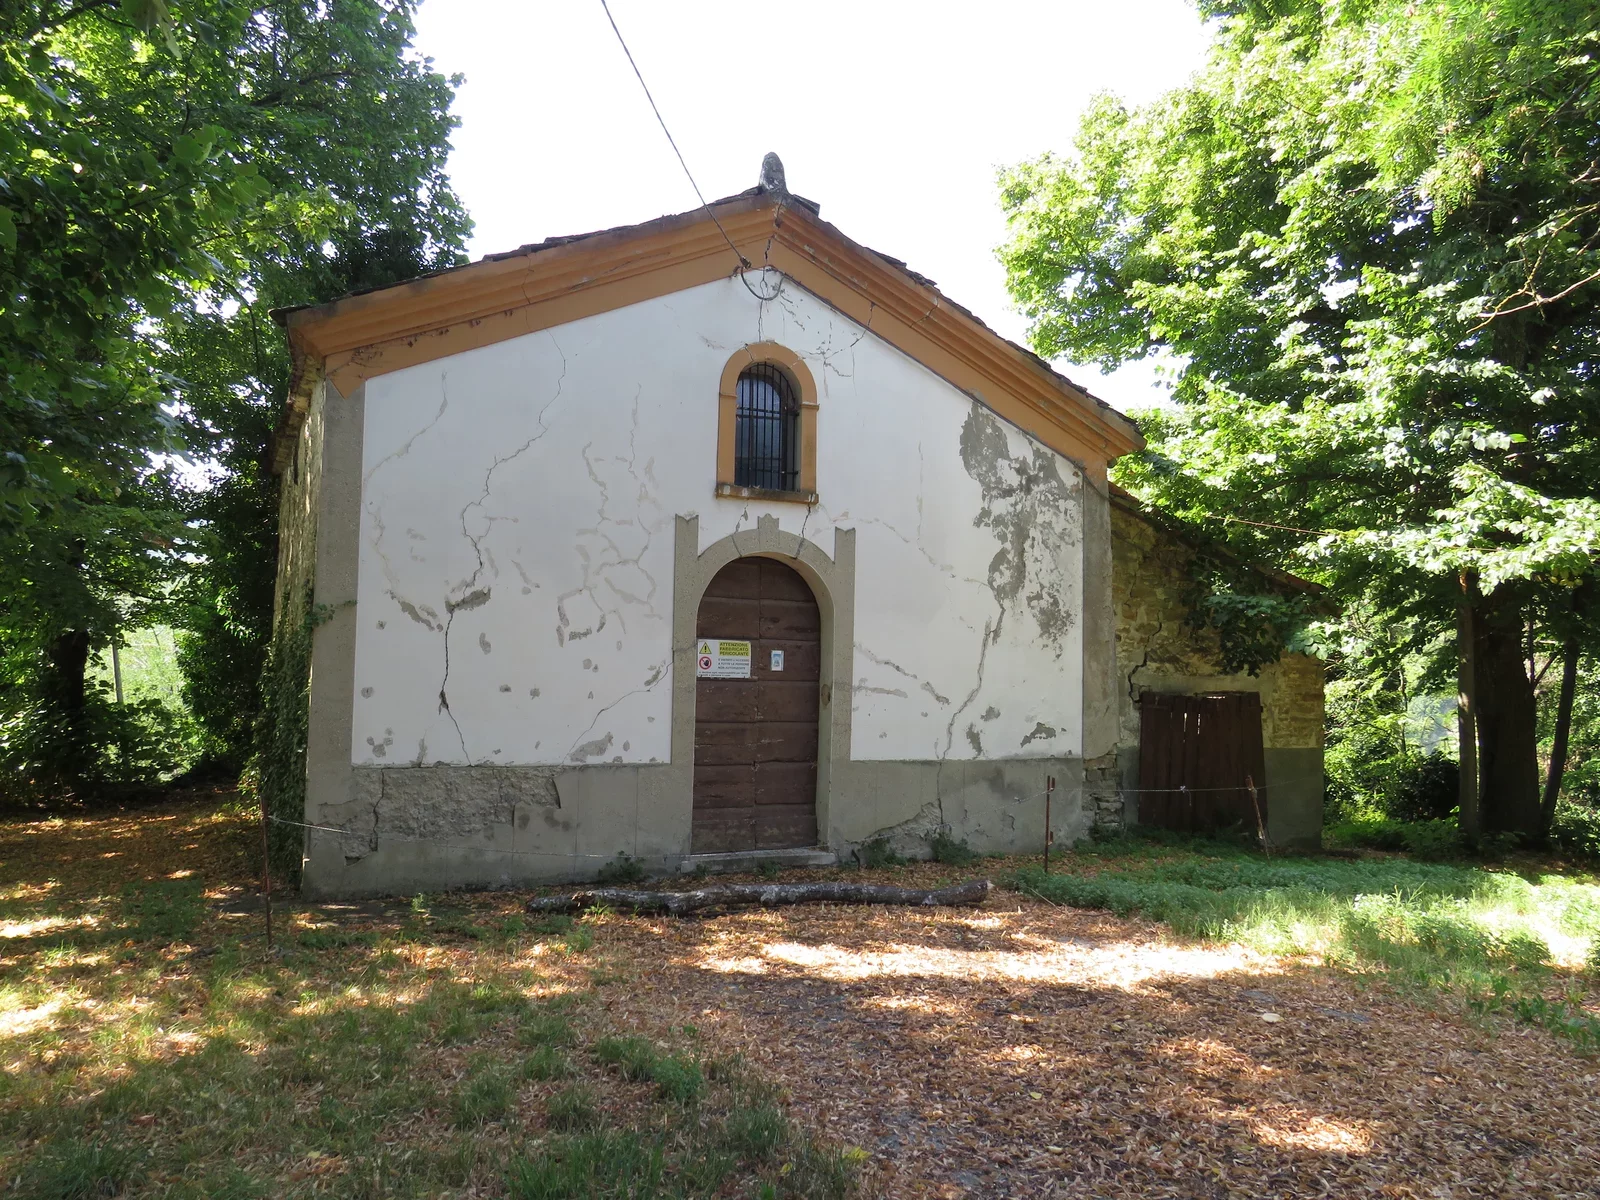 Facade of the church in Predappio